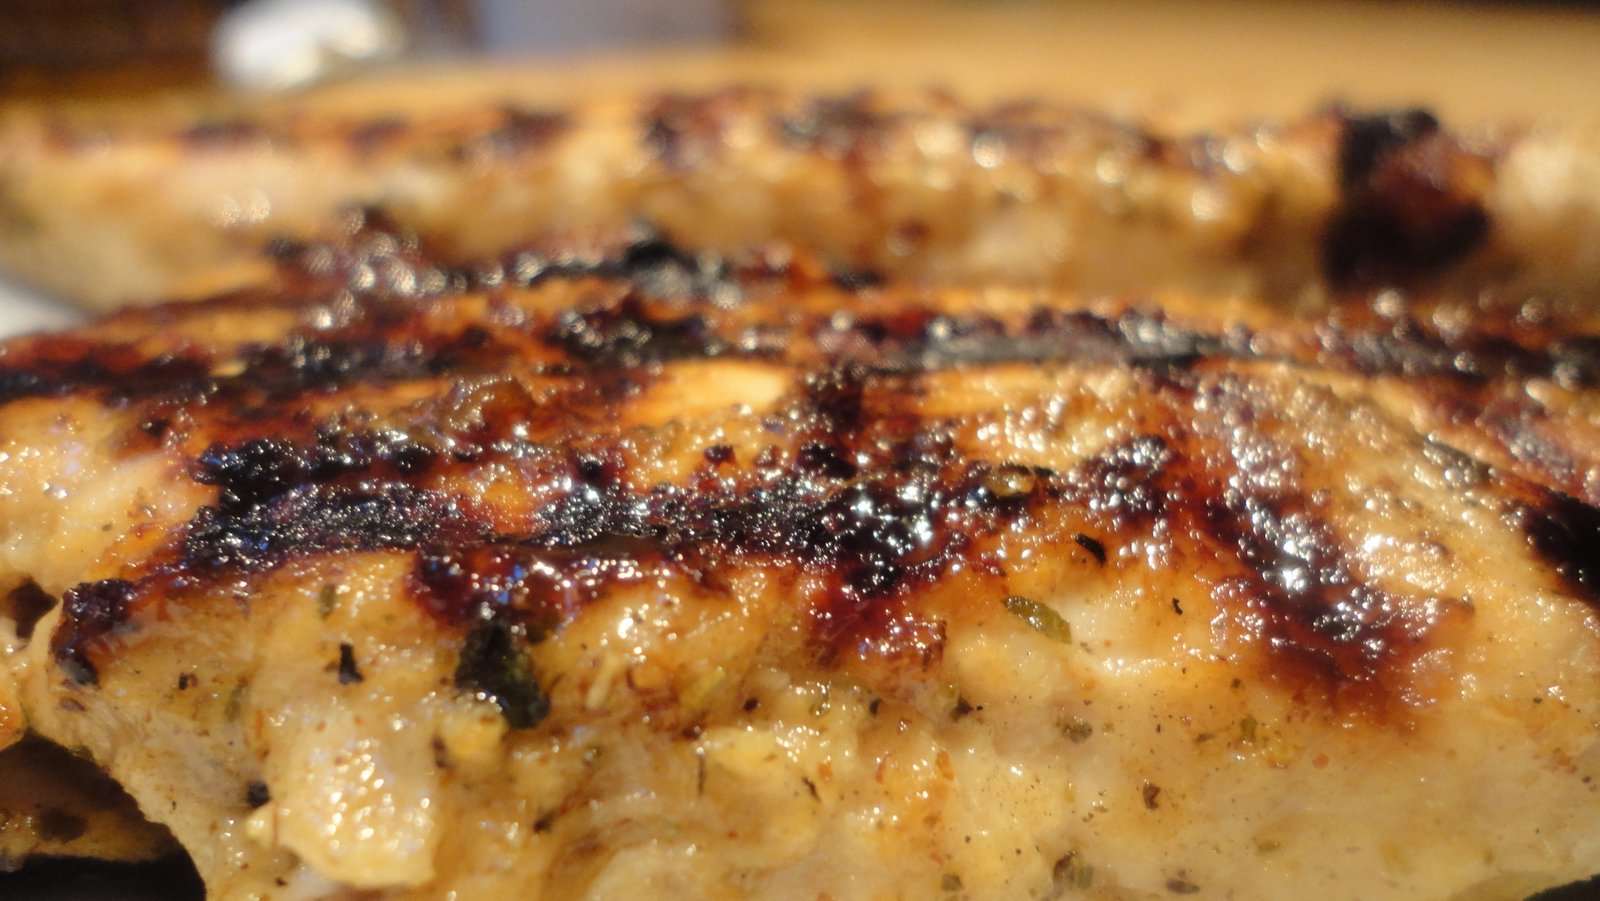 Recipe #42 | Tasty Grilled Turkey Tenders